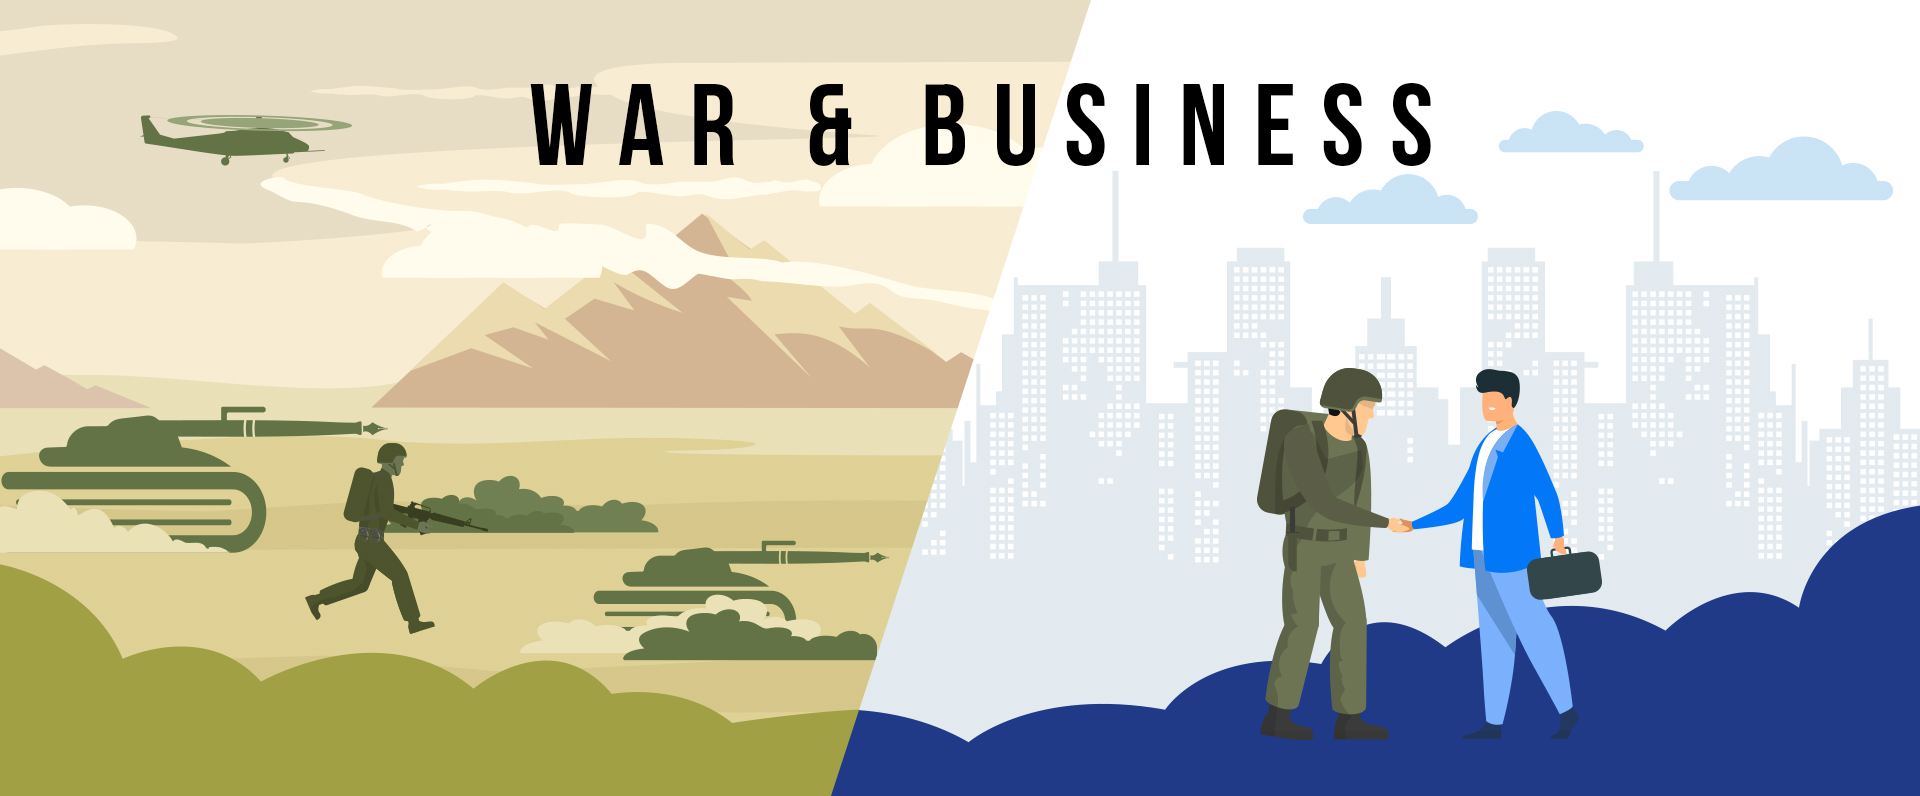 War & Business Banner